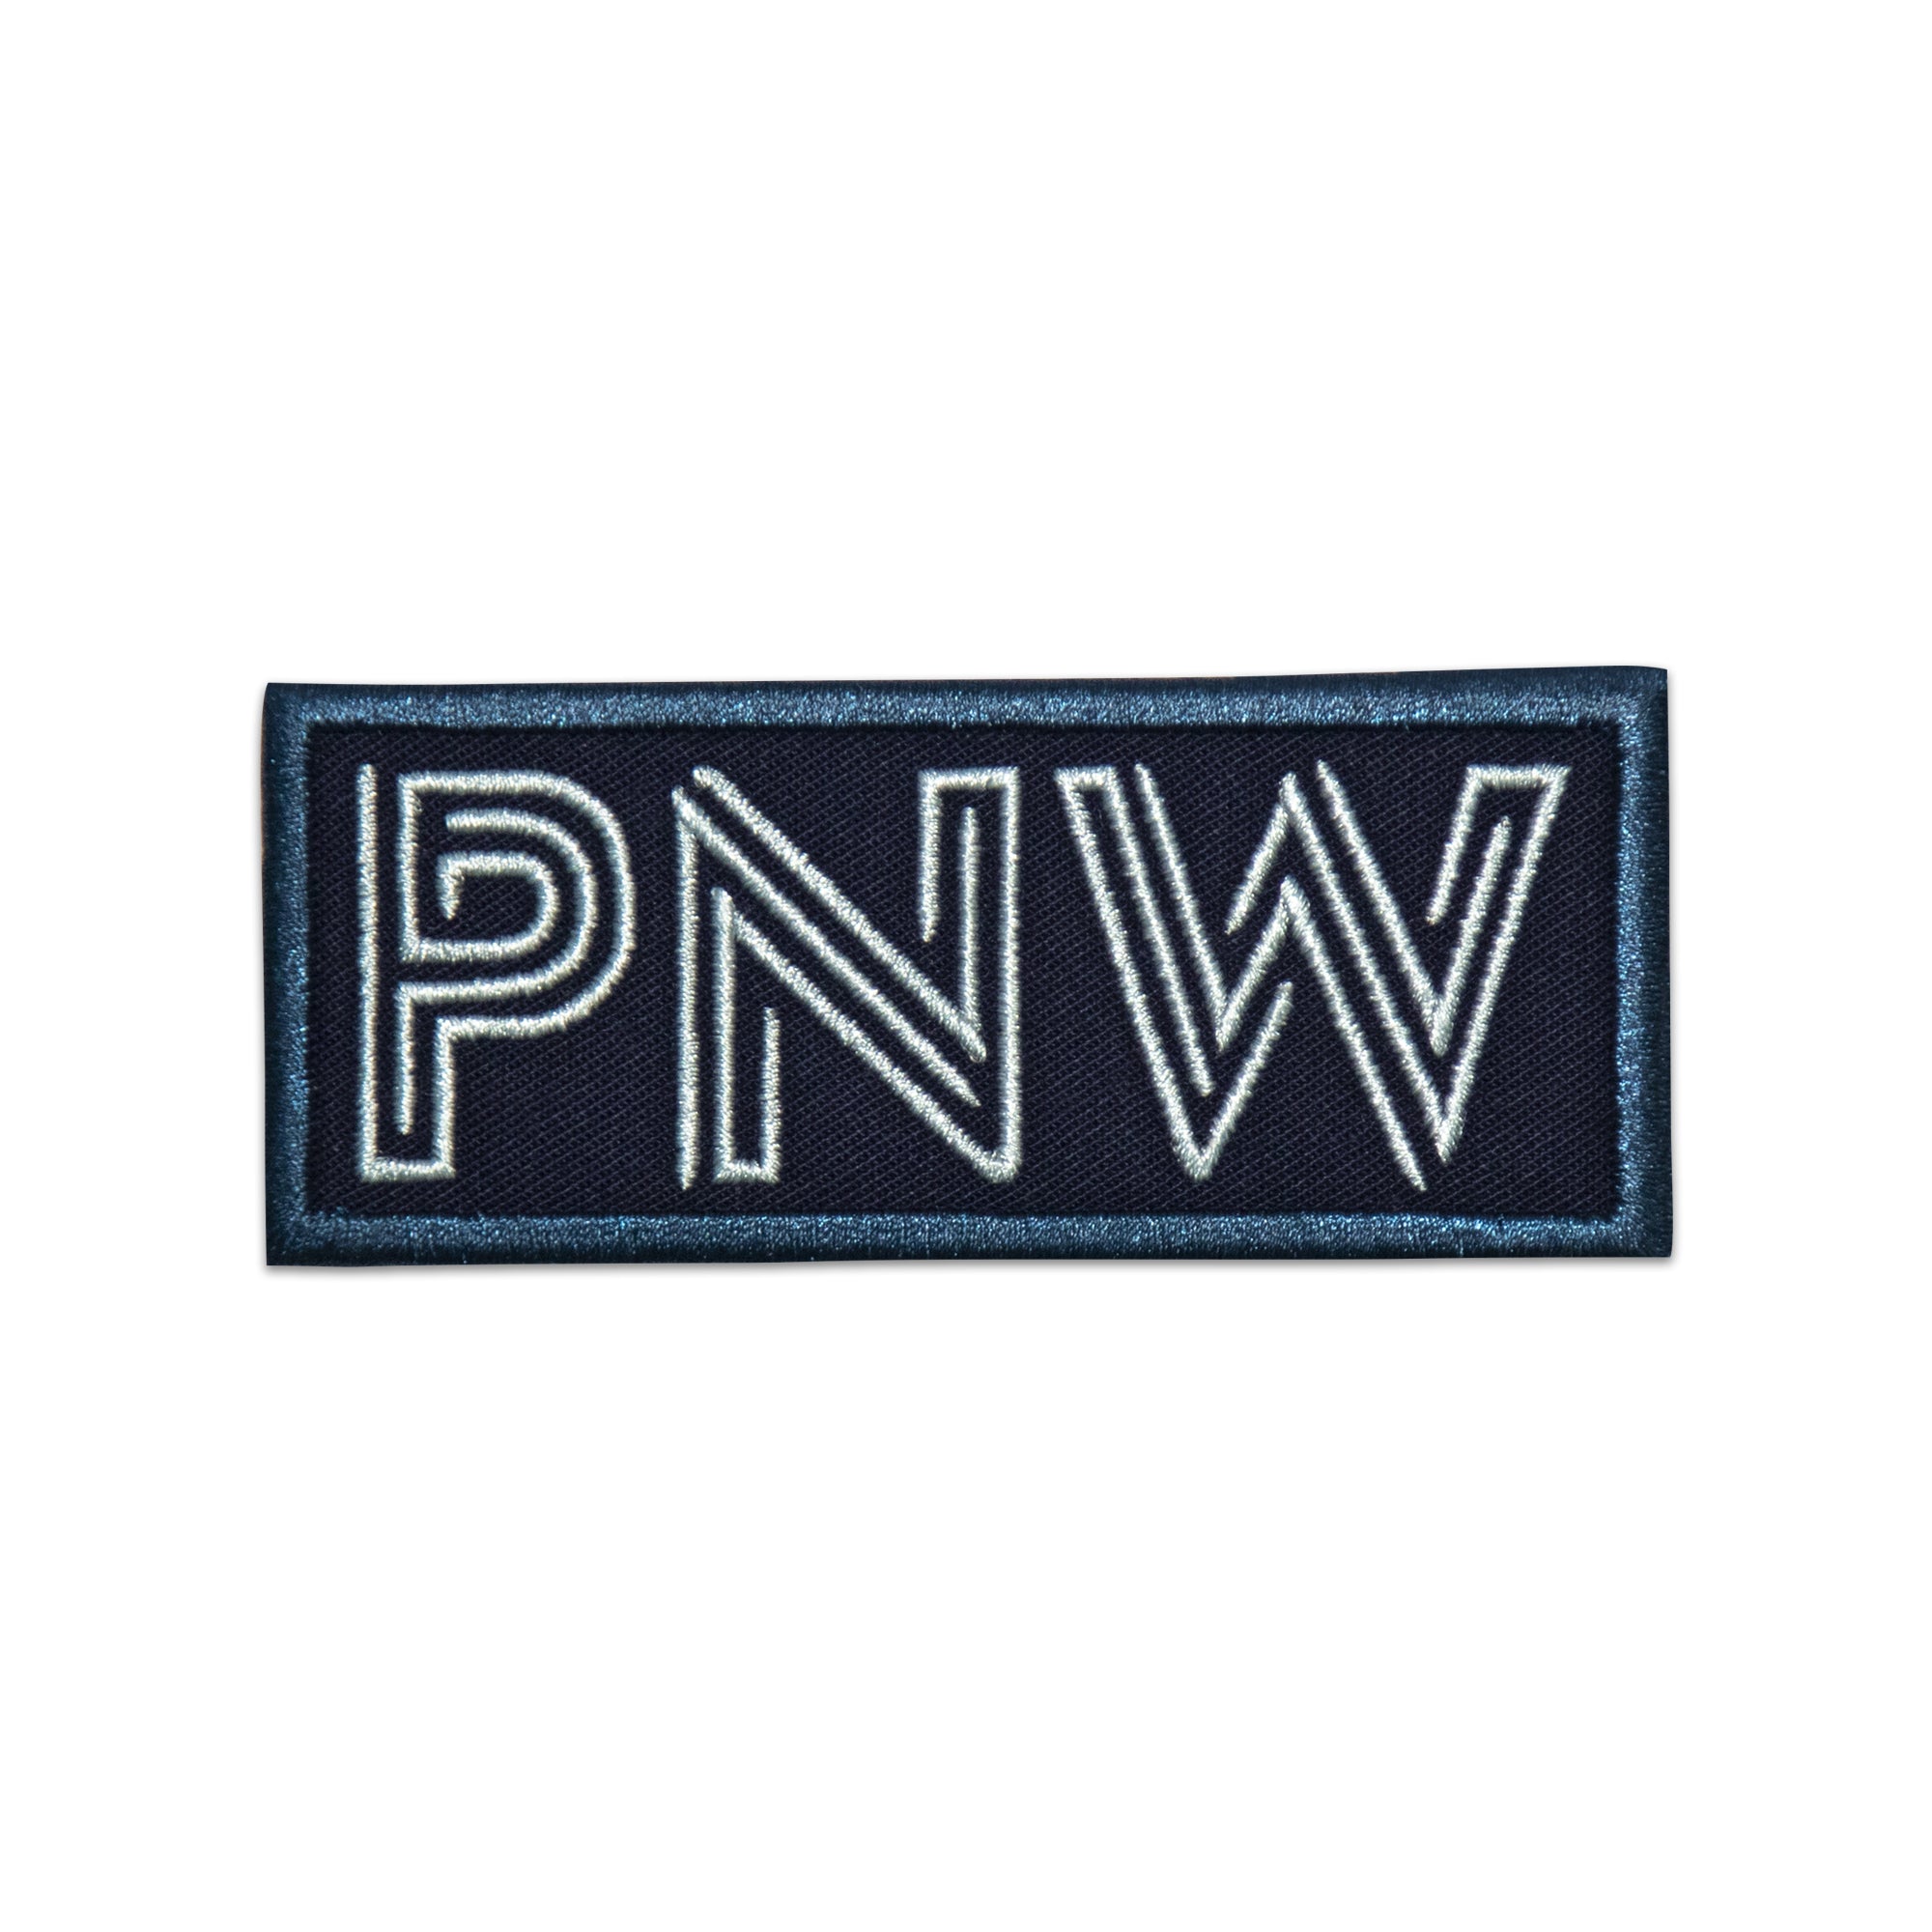 PNW Patch